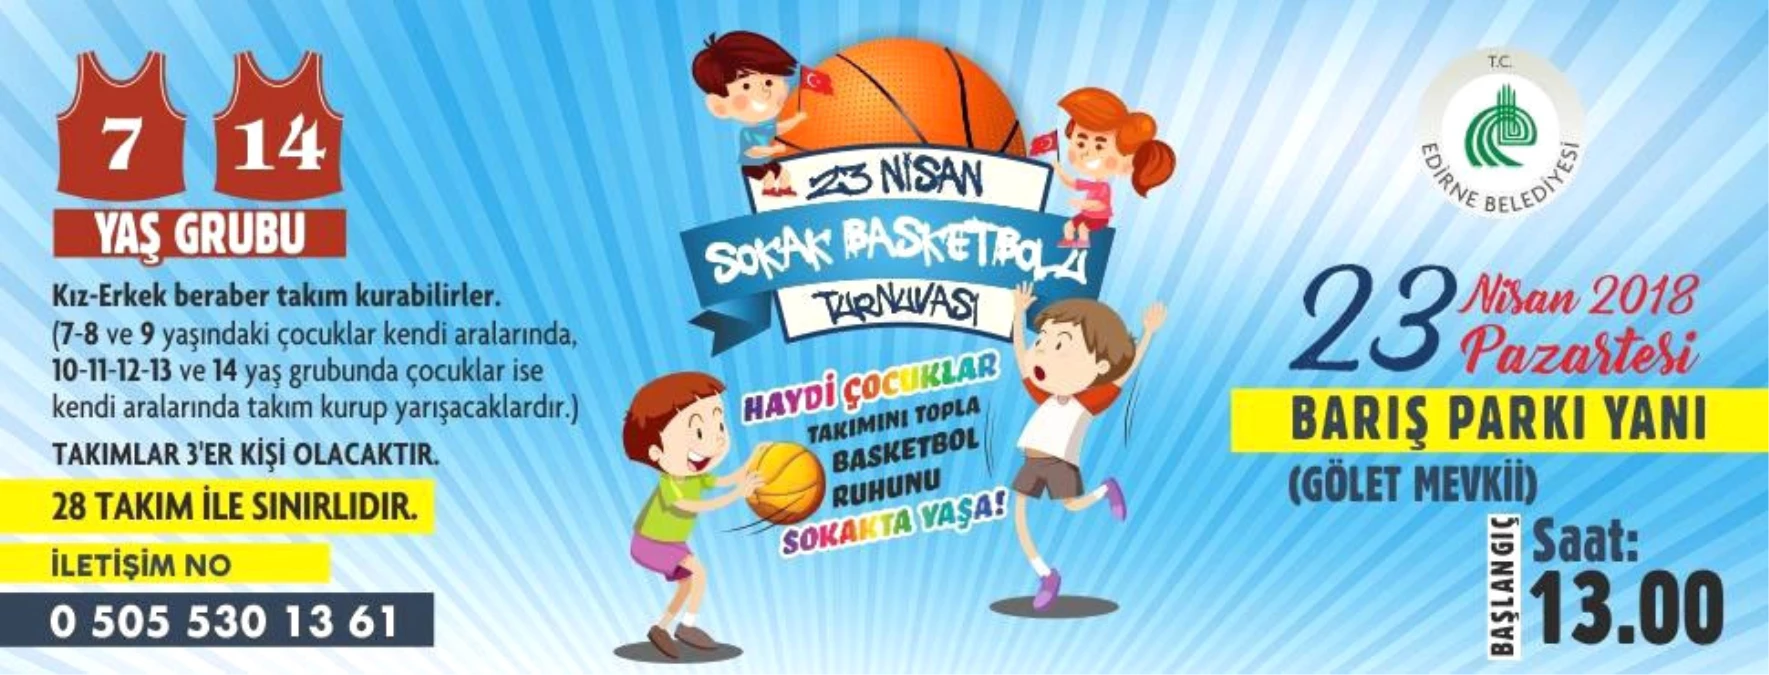 23 Nisan Çocuklarına Basketbol Turnuvası